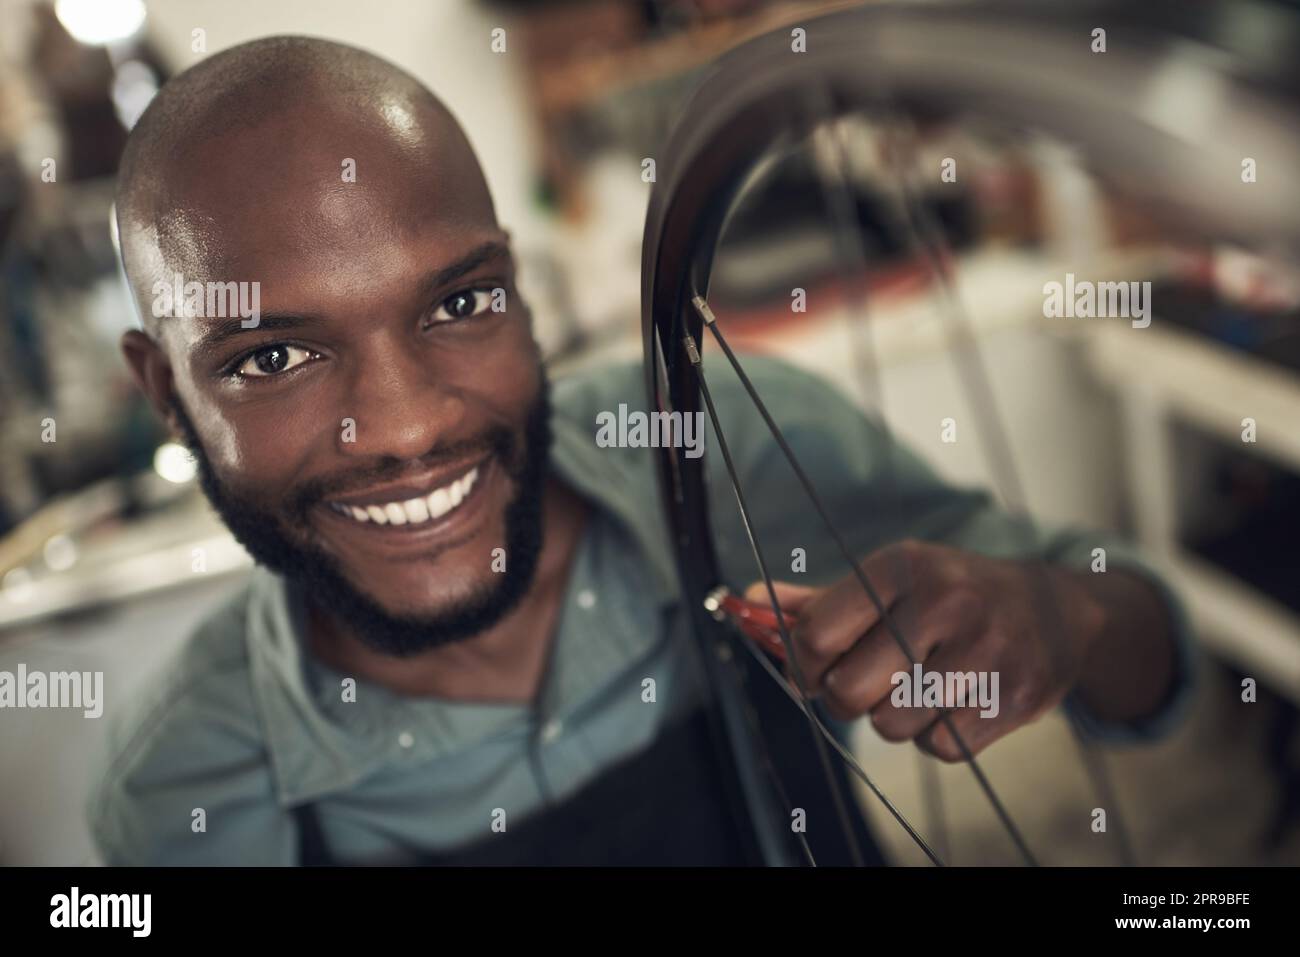 Nous fournissons un service de qualité ici. Un beau jeune homme debout seul dans son magasin et de réparer une roue de vélo. Banque D'Images